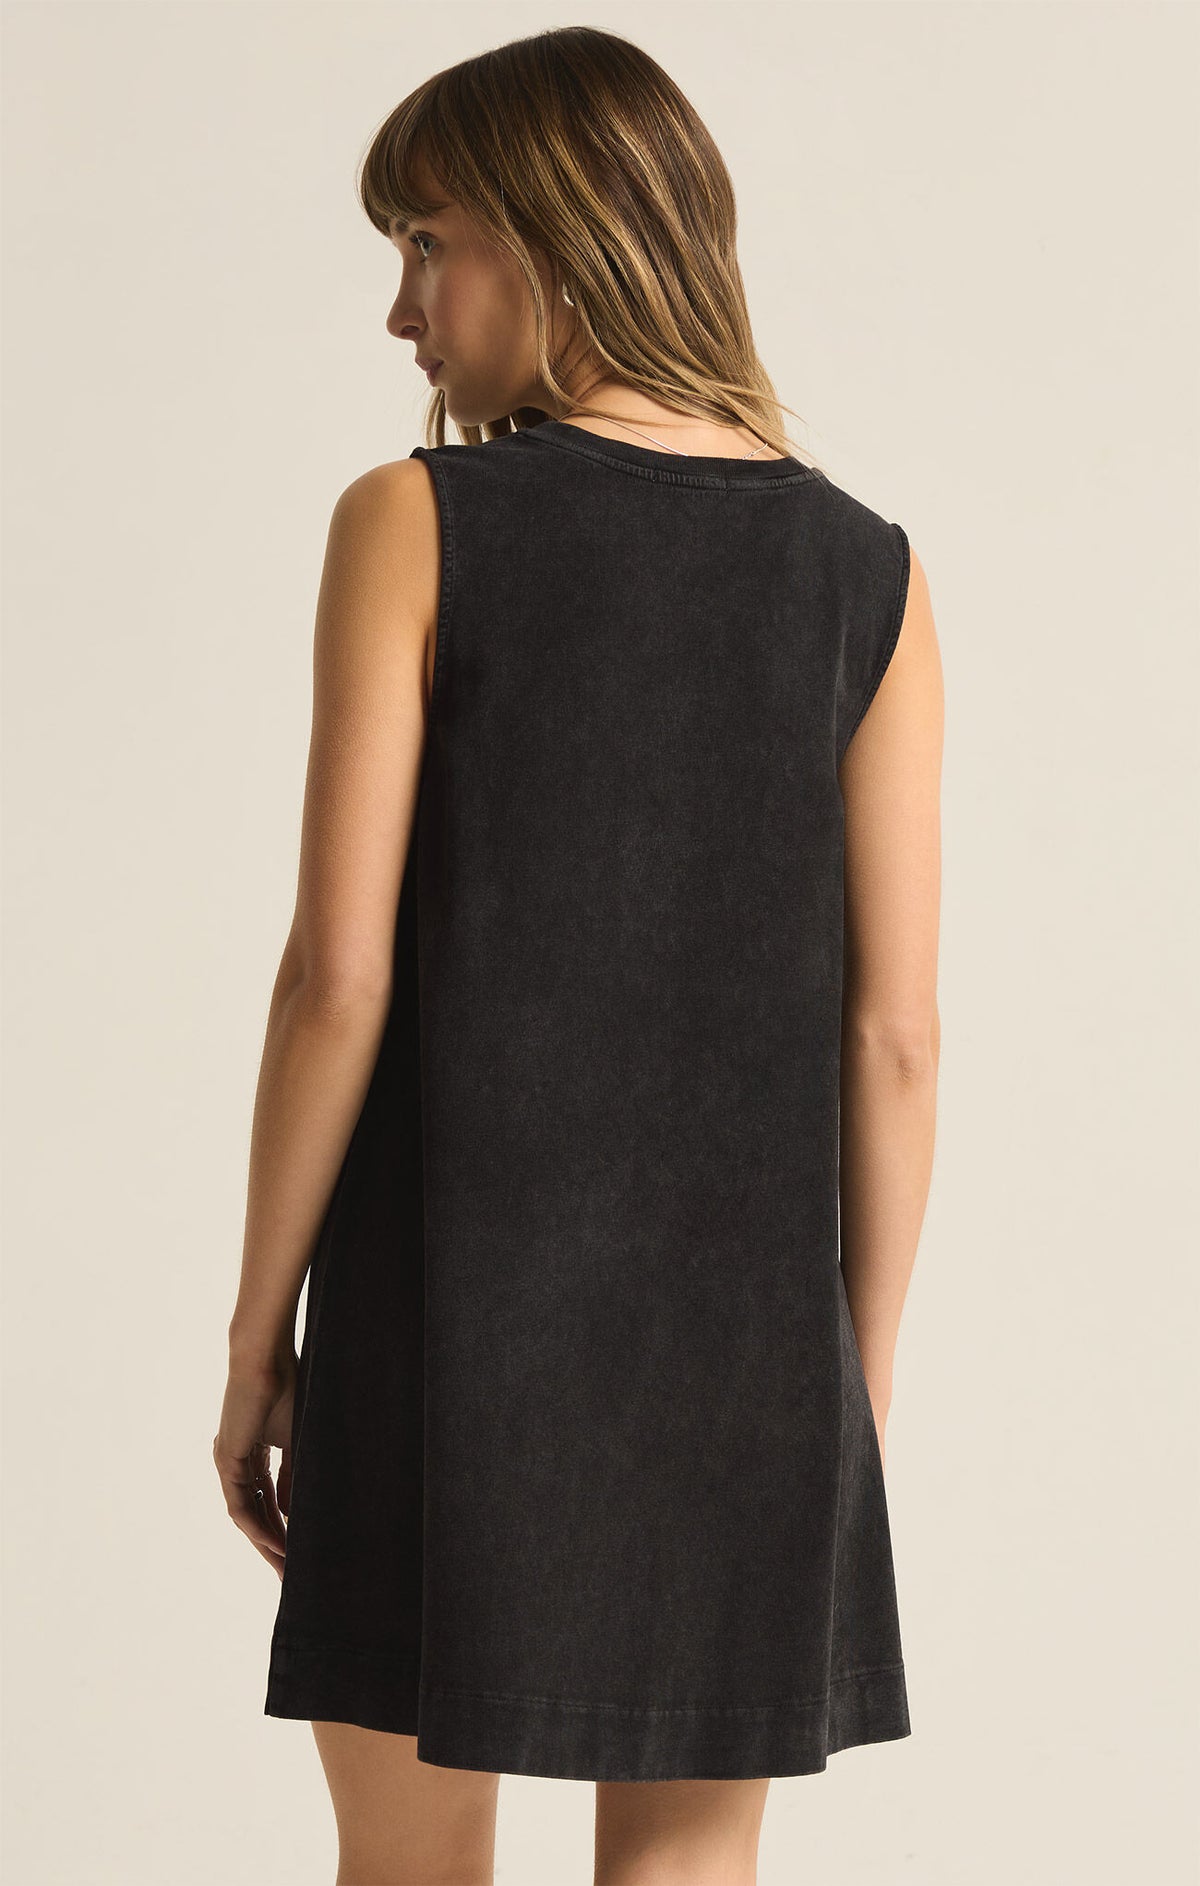 Sloane Dress in Black - Sophie